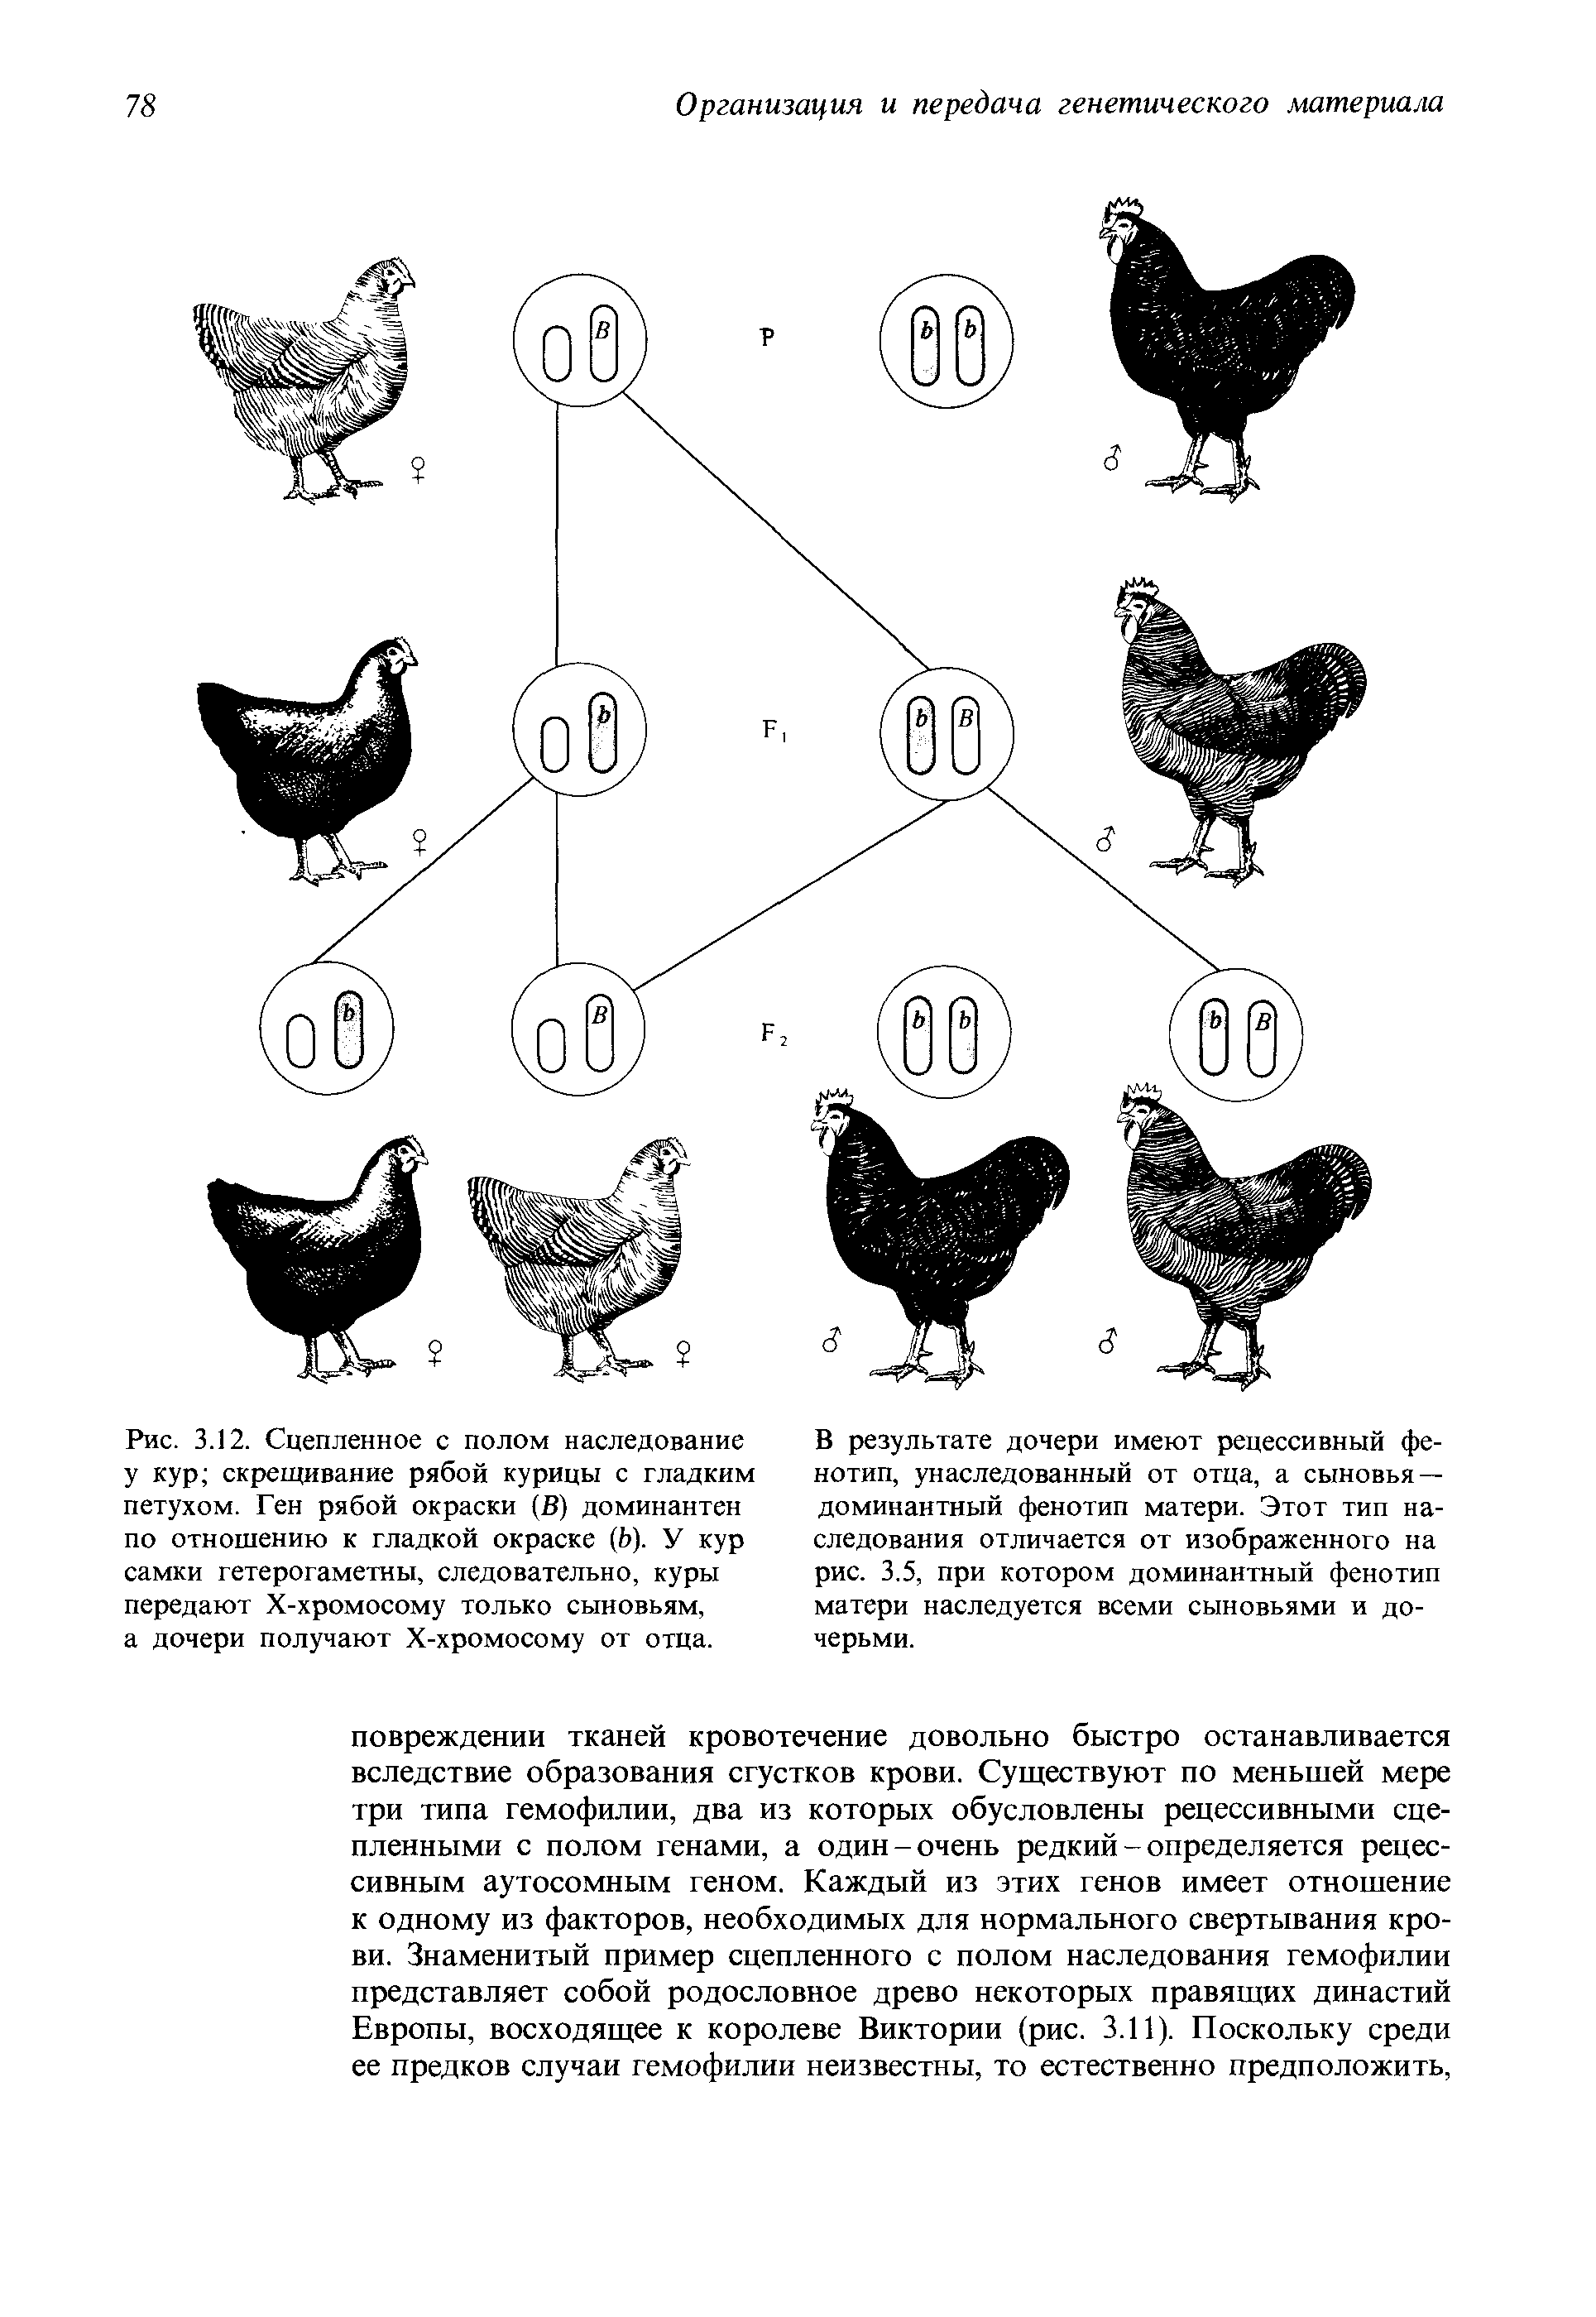 При скрещивание курицы с листовидным